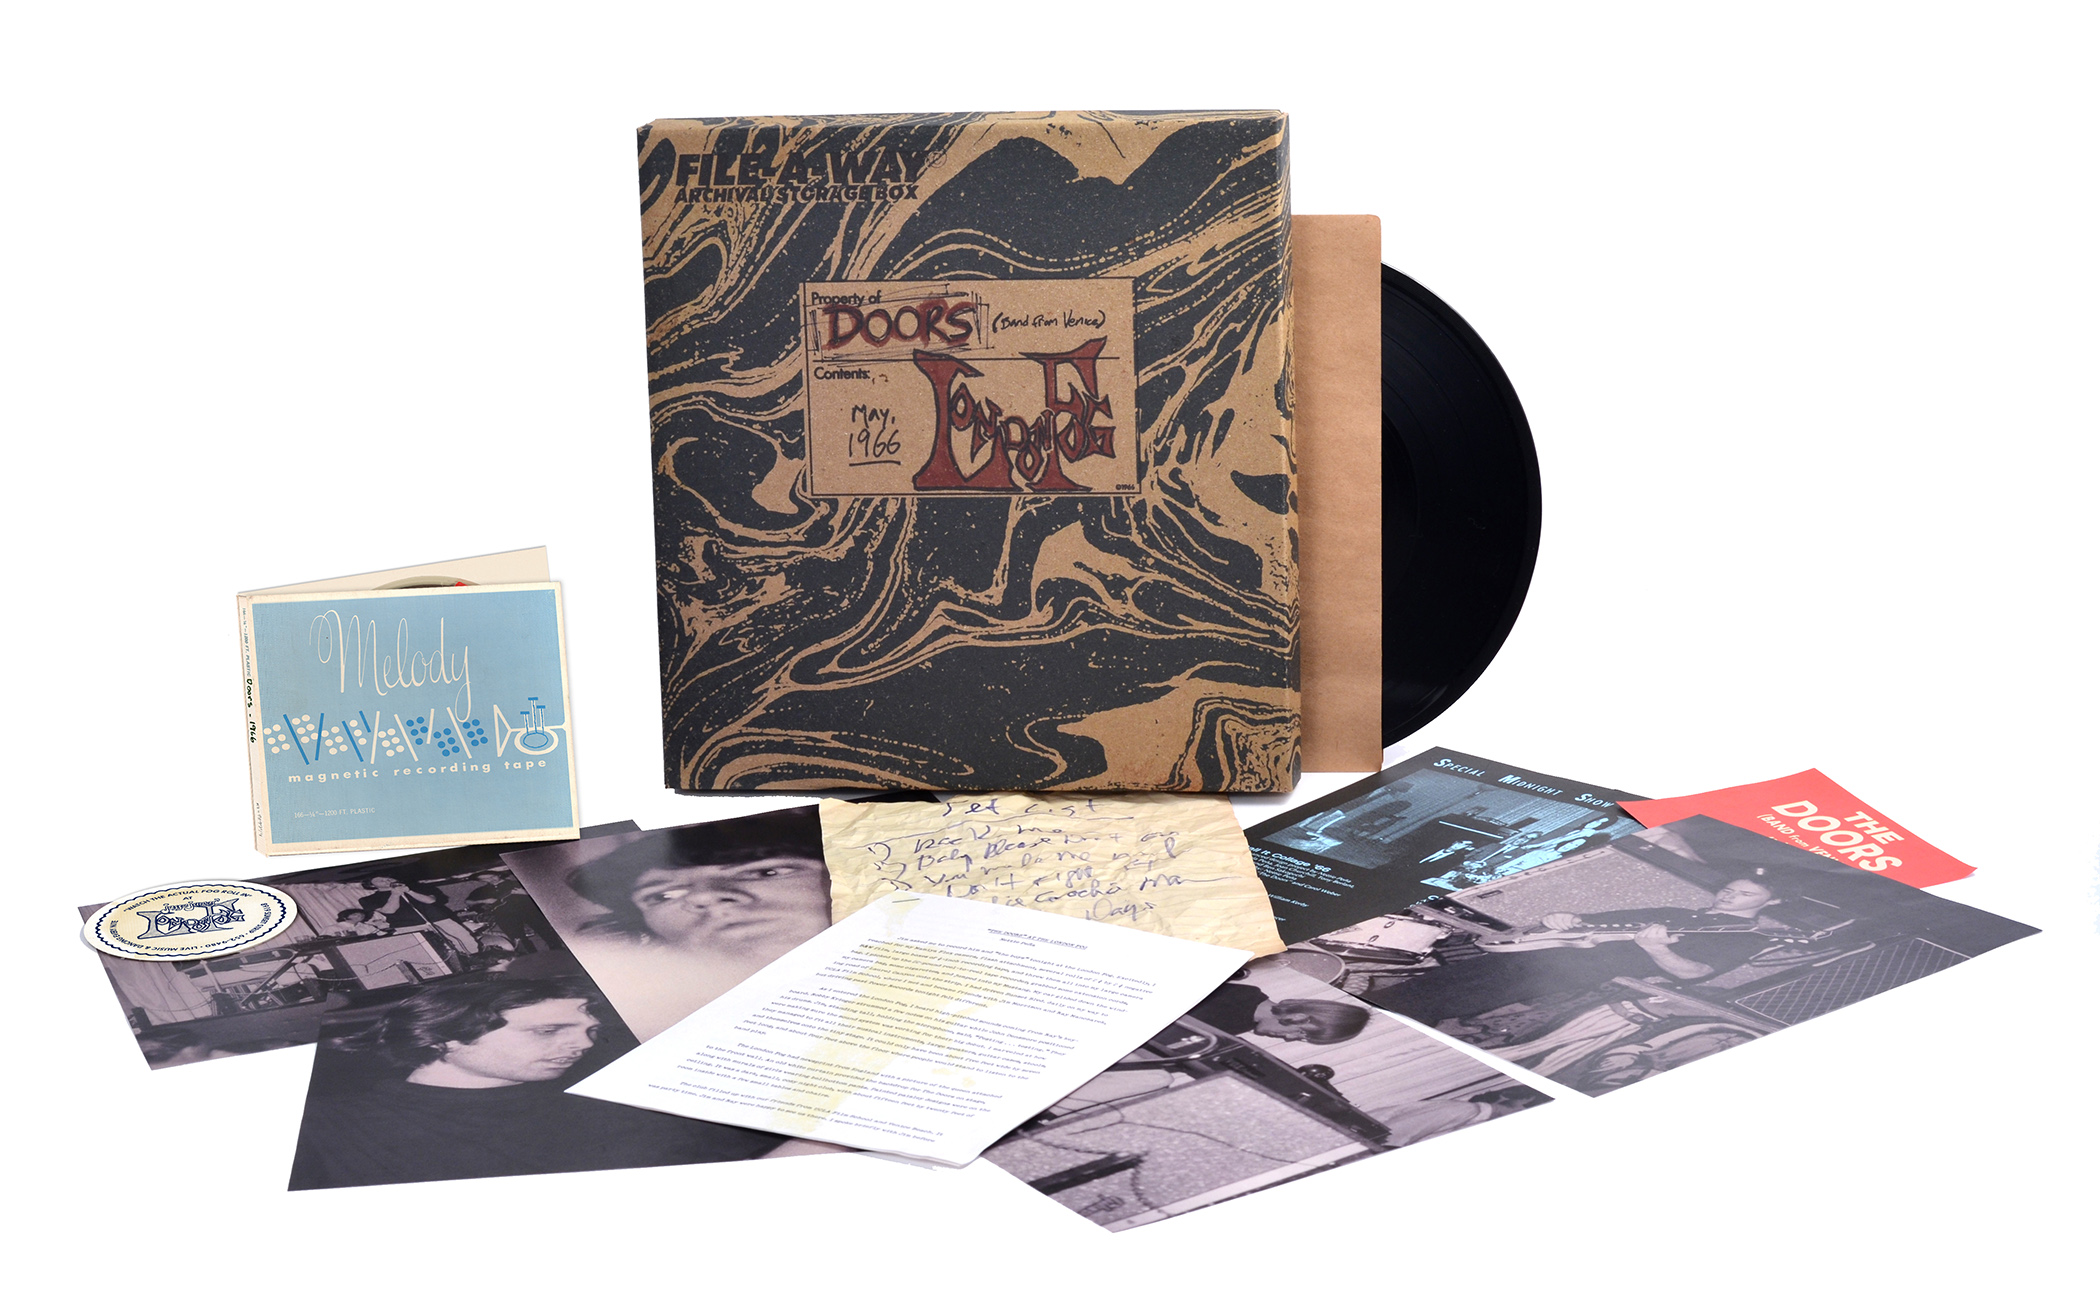 Архивная запись одного из первых живых концертов The Doors выйдет в рамках бокс-сета "London Fog 66"